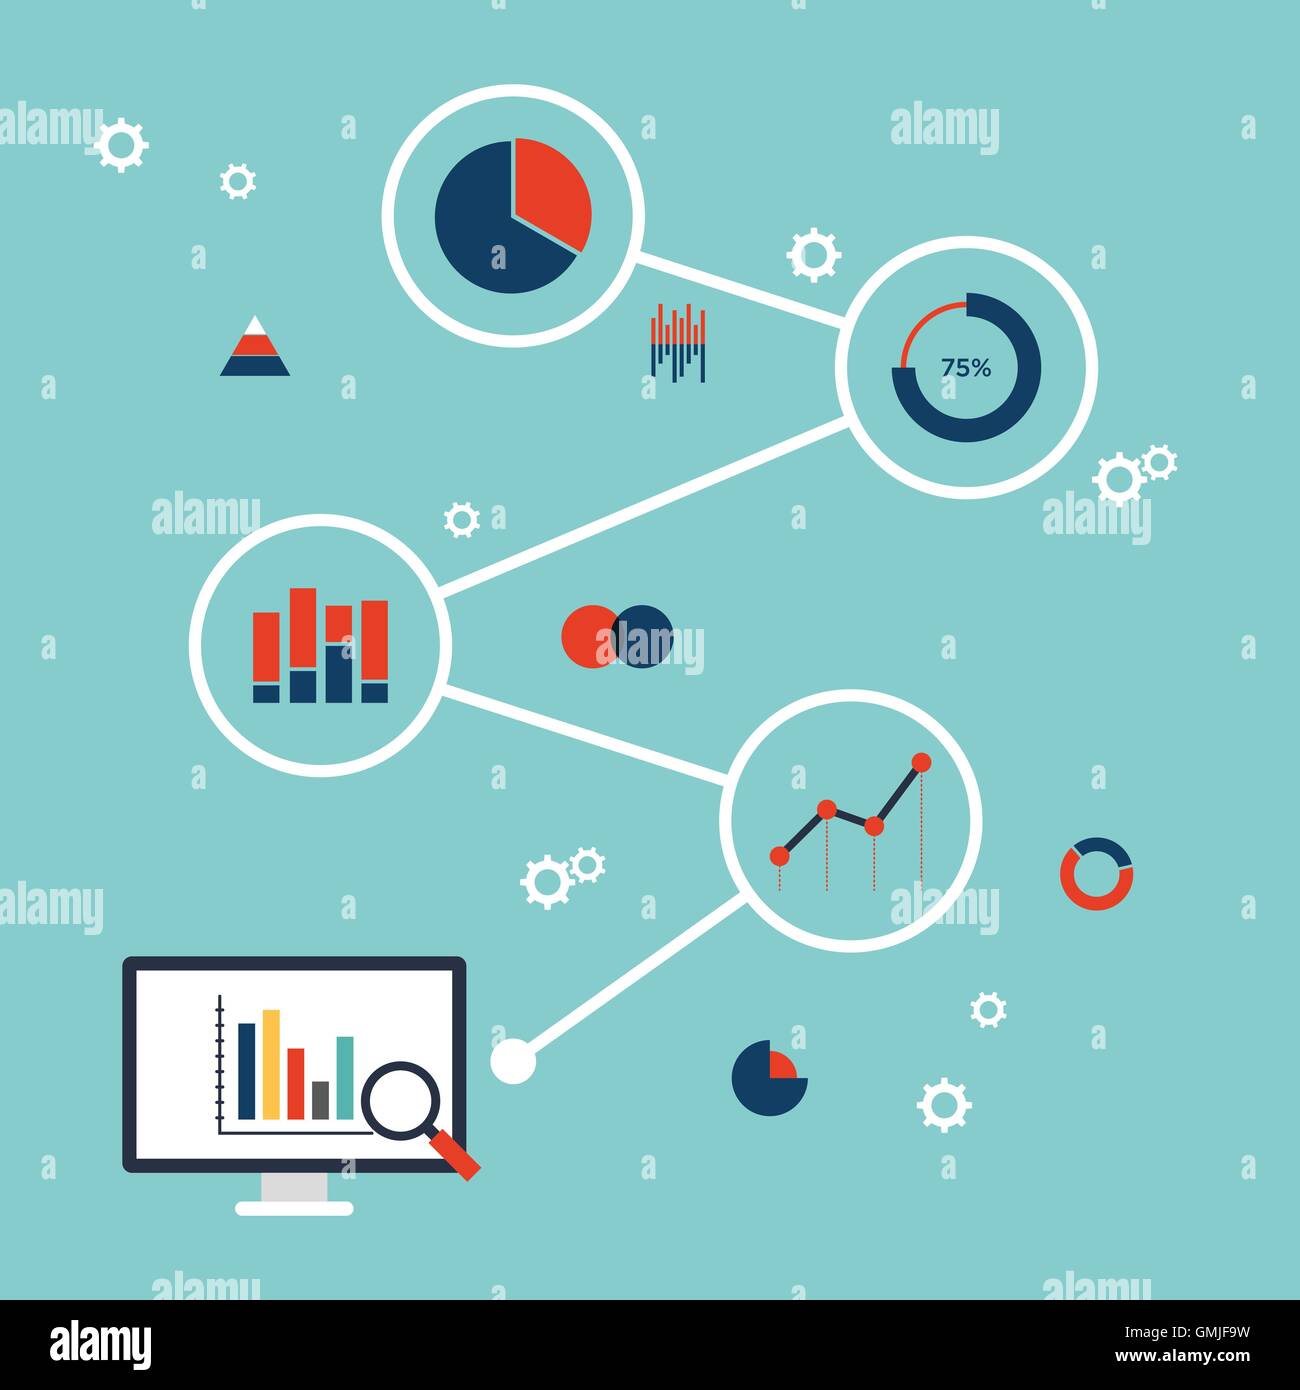 L'analyse de données d'entreprise, des finances, de l'information statistique, l'analyse de recherche de base de données concept design plat infographie Illustration de Vecteur